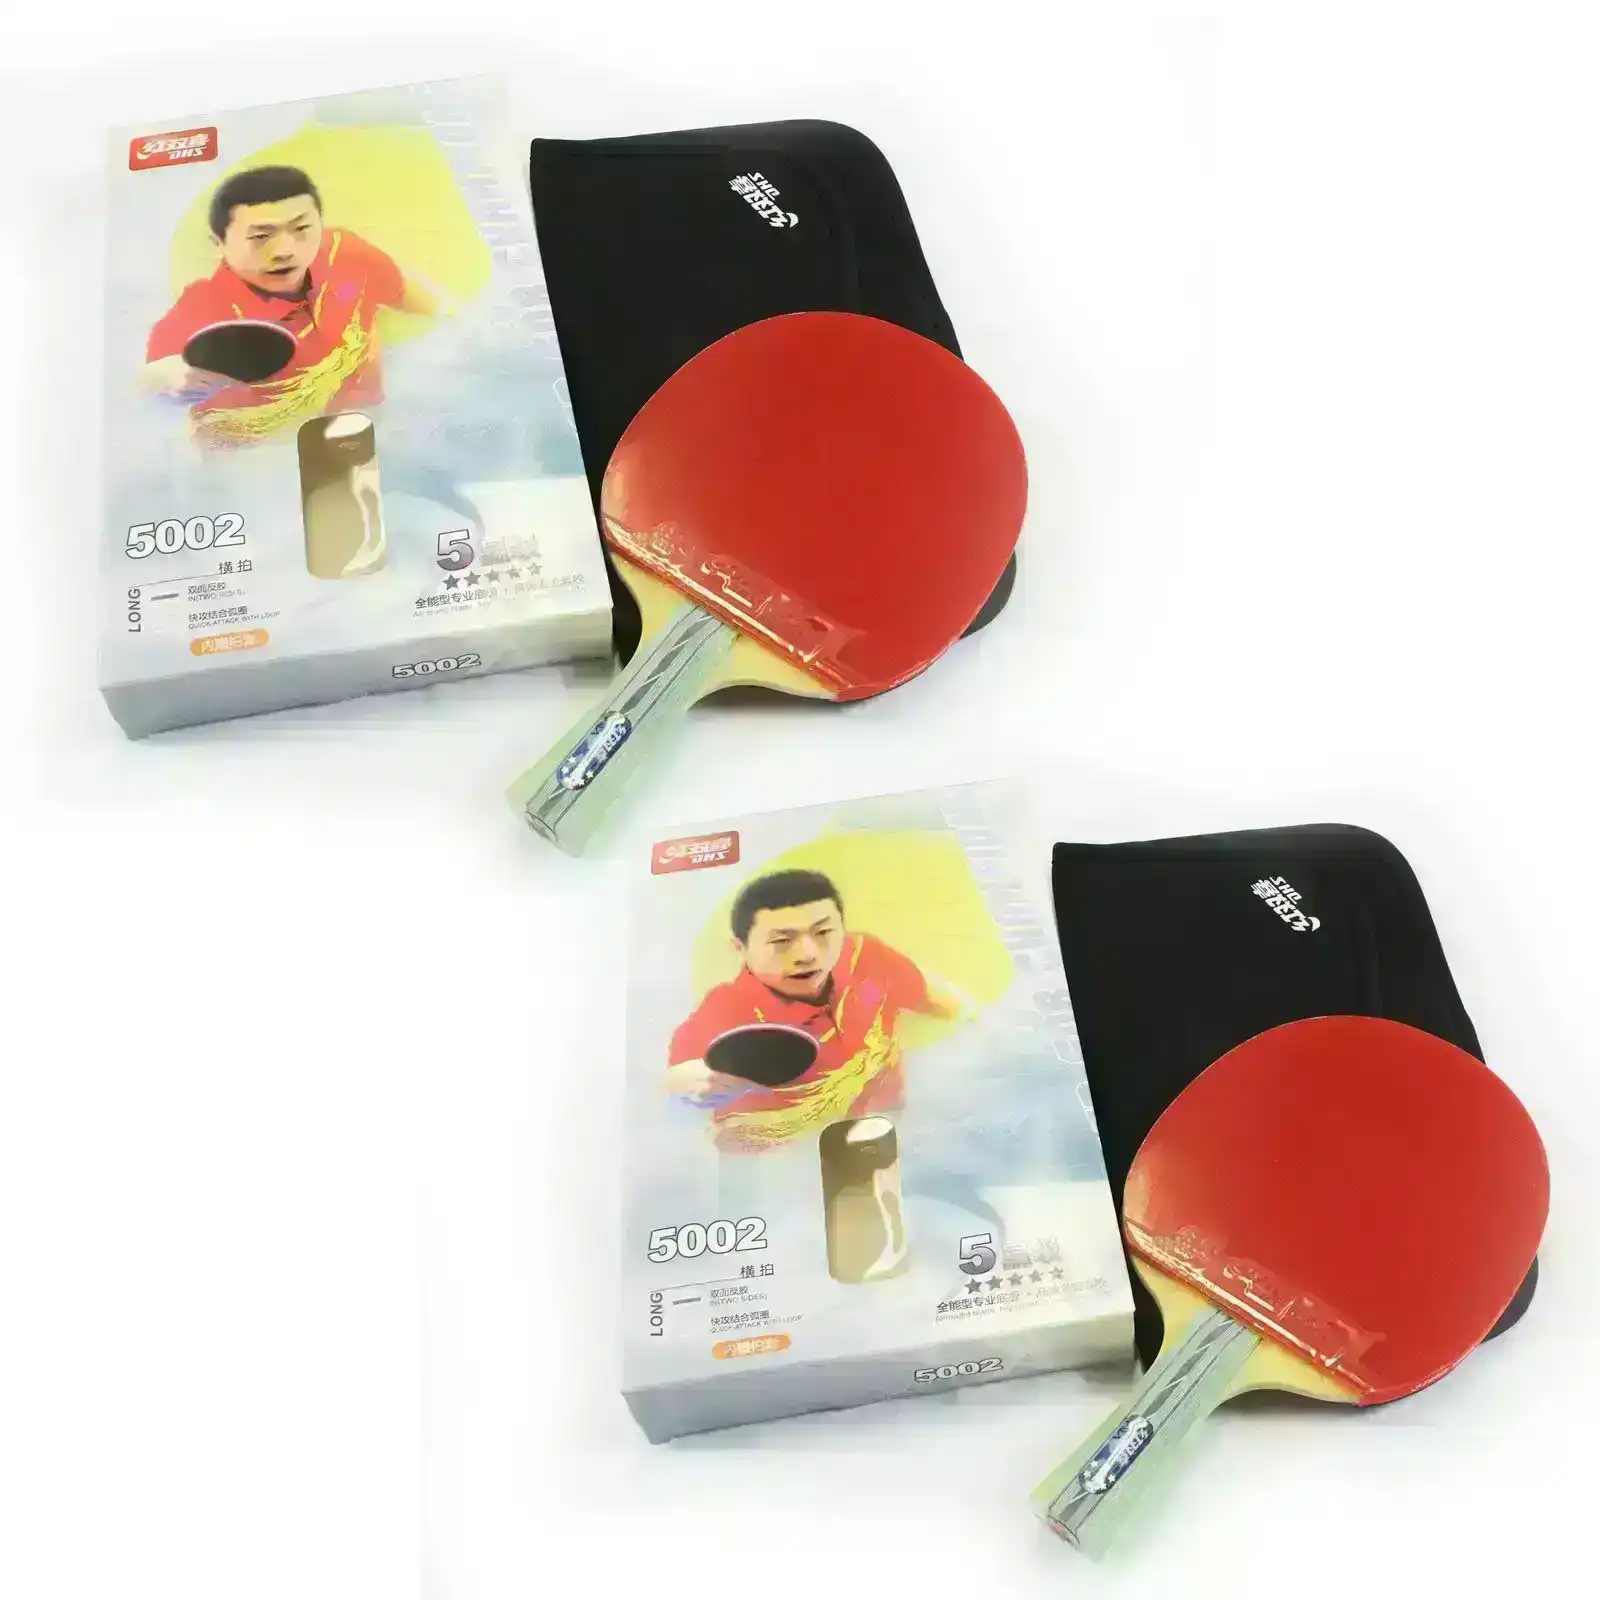 DHS 5 Star Table Tennis Bat / Ping Pong Racket Paddle Long Handle 5002 Pair